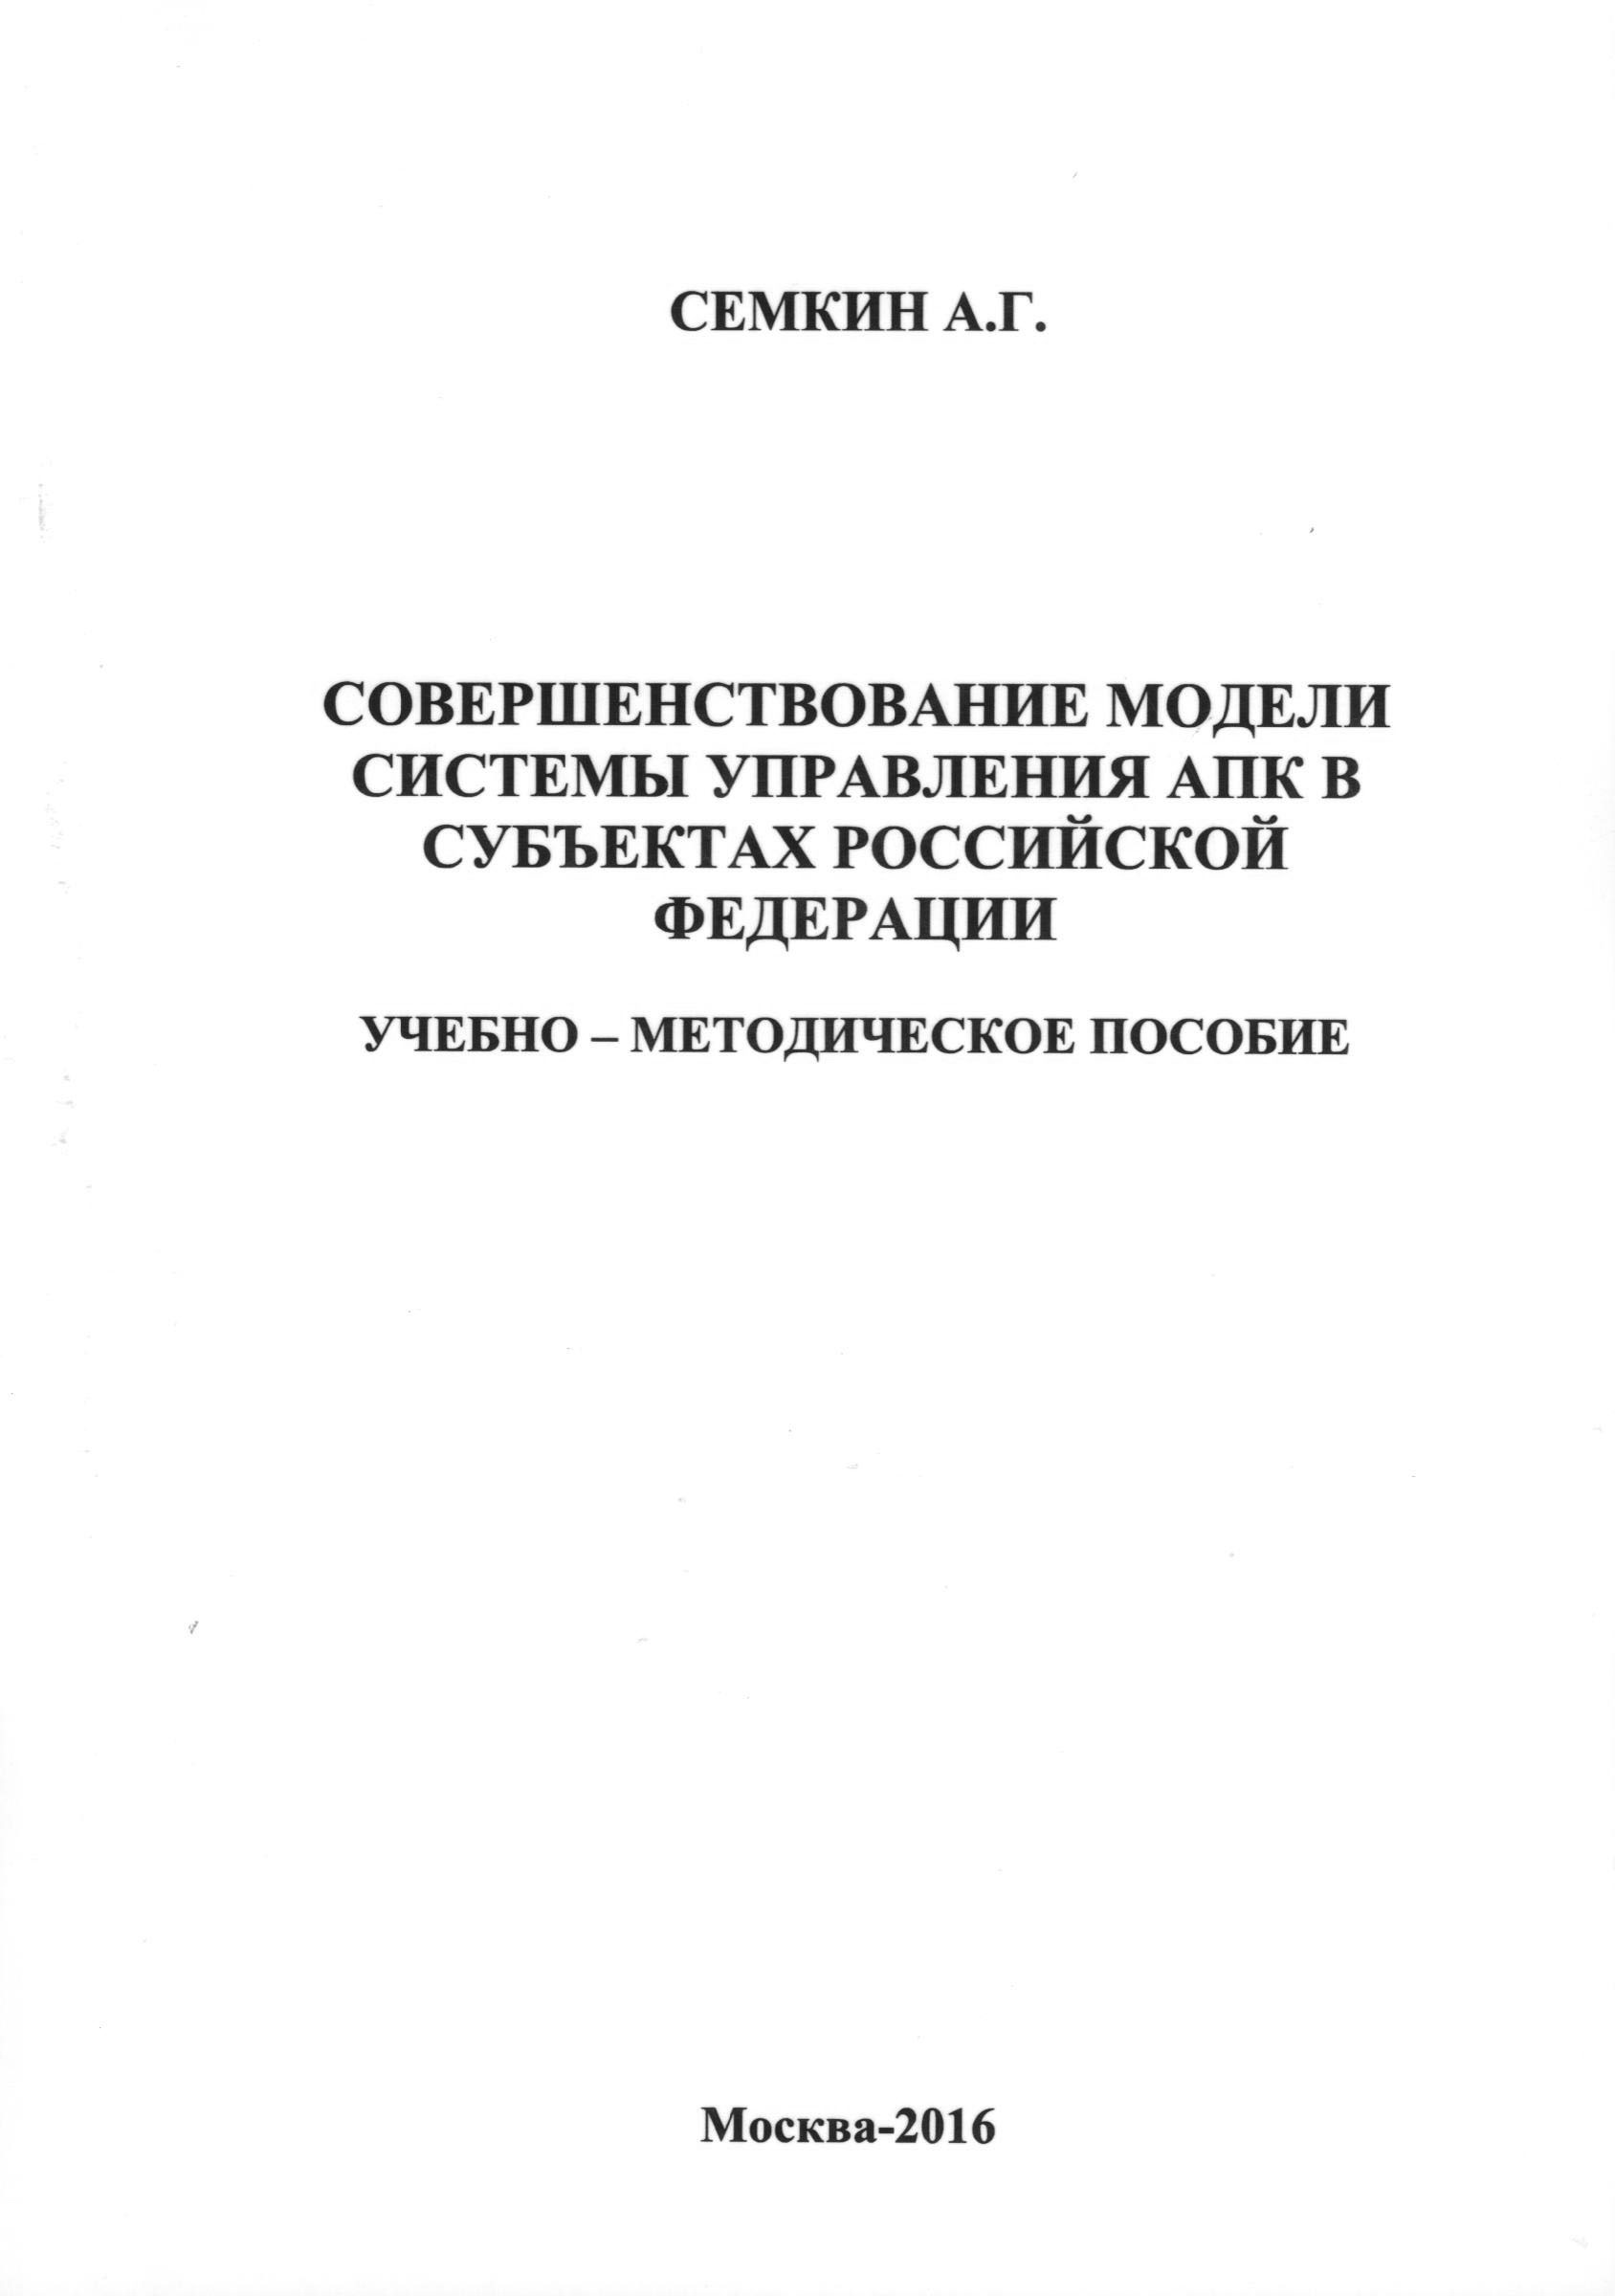 Совершенствование модели системы управления АПК в субъектах Российской Федерации